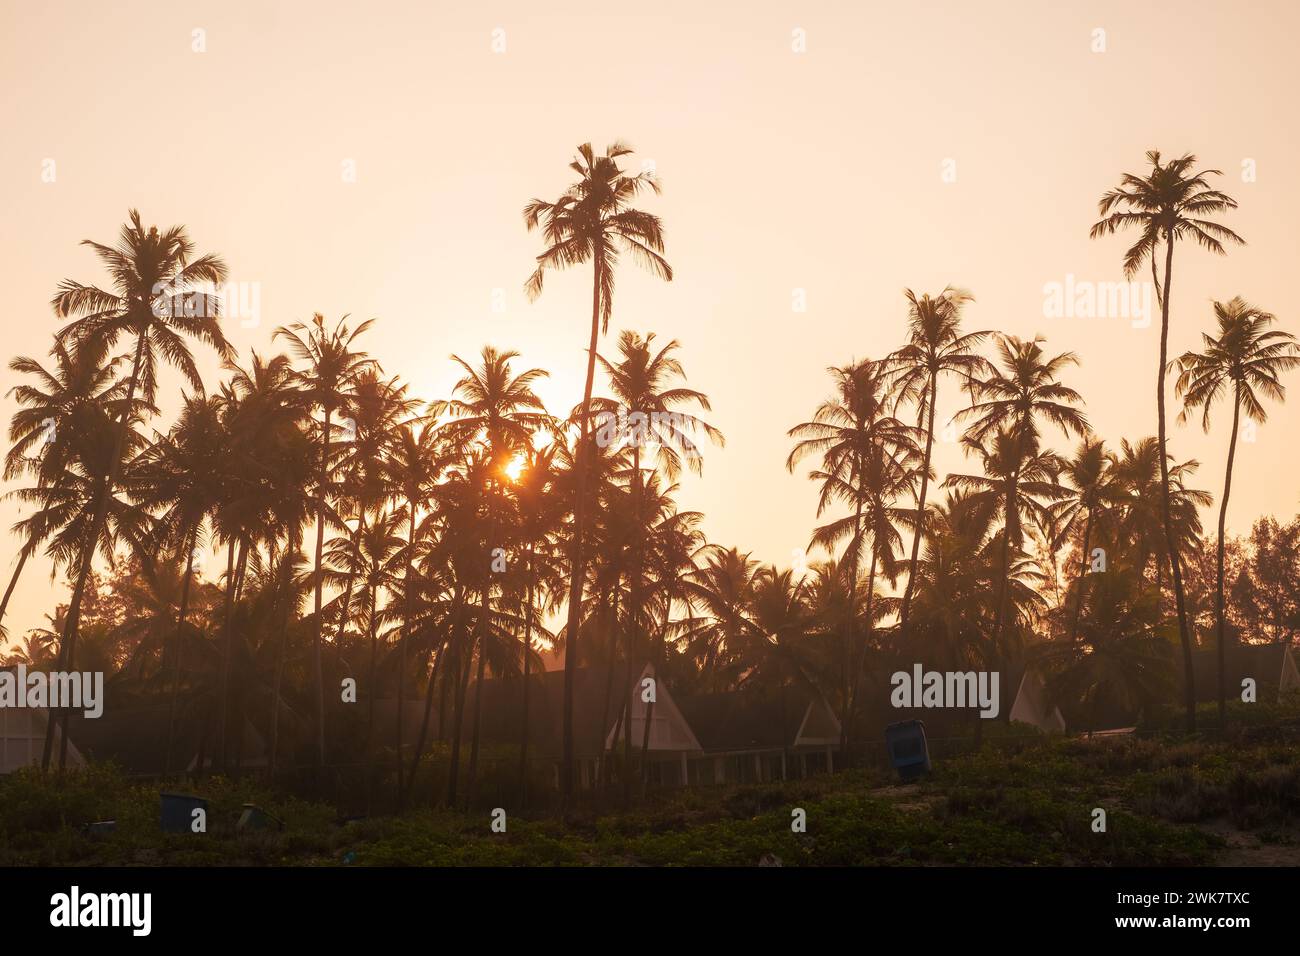 Palmiers et soleil, lever de soleil tropical pris à Goa, Inde. cocotiers en silhouettes. Silhouettes de palmiers sur la plage tropicale Banque D'Images